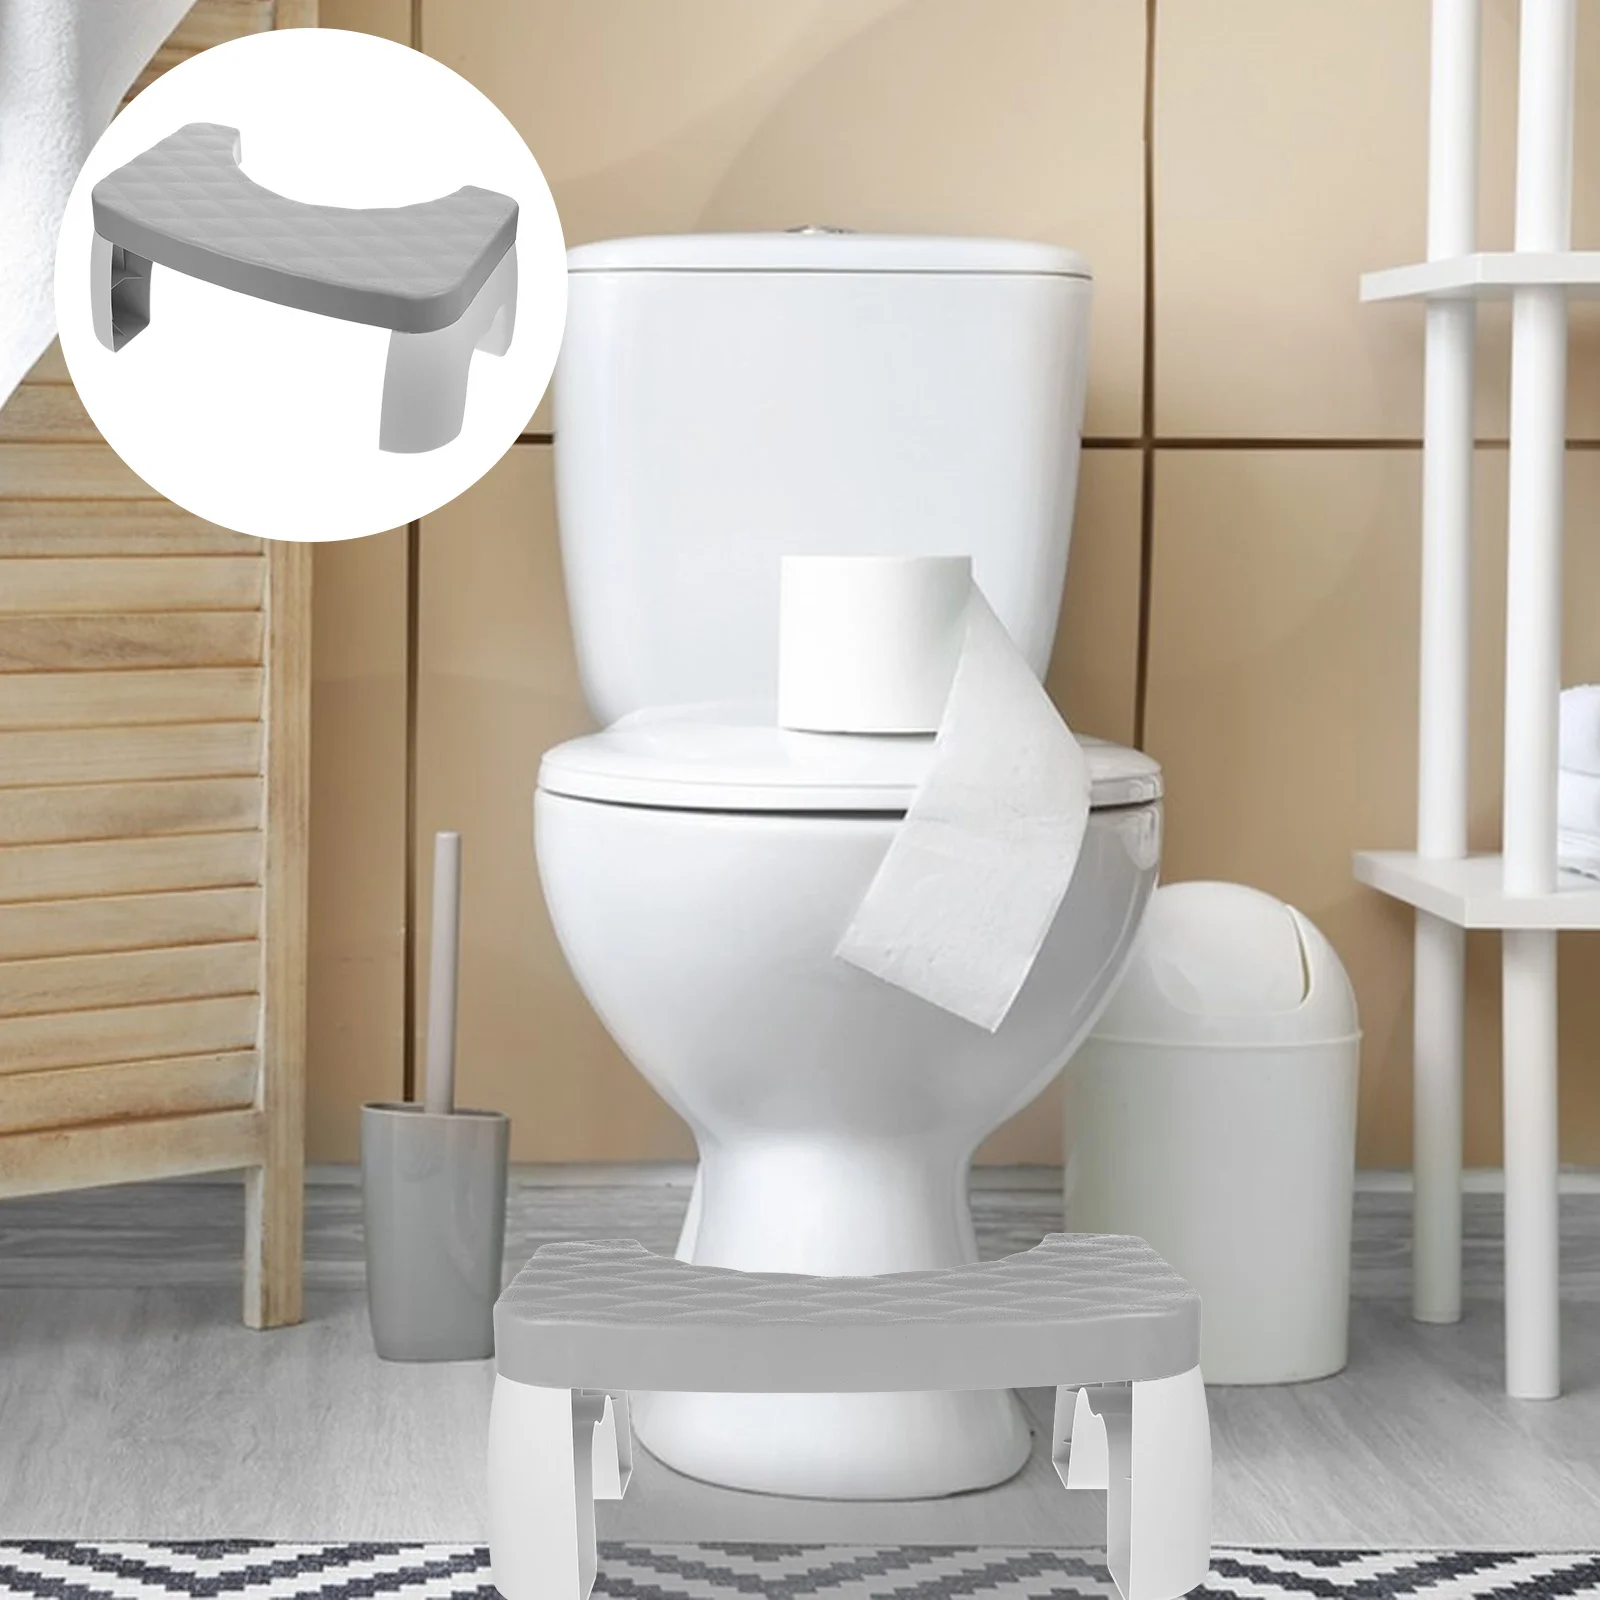 

Табурет для туалета, стул для уборки в ванной, пластиковые ступенчатые стулья для взрослых, домашний стул для ног